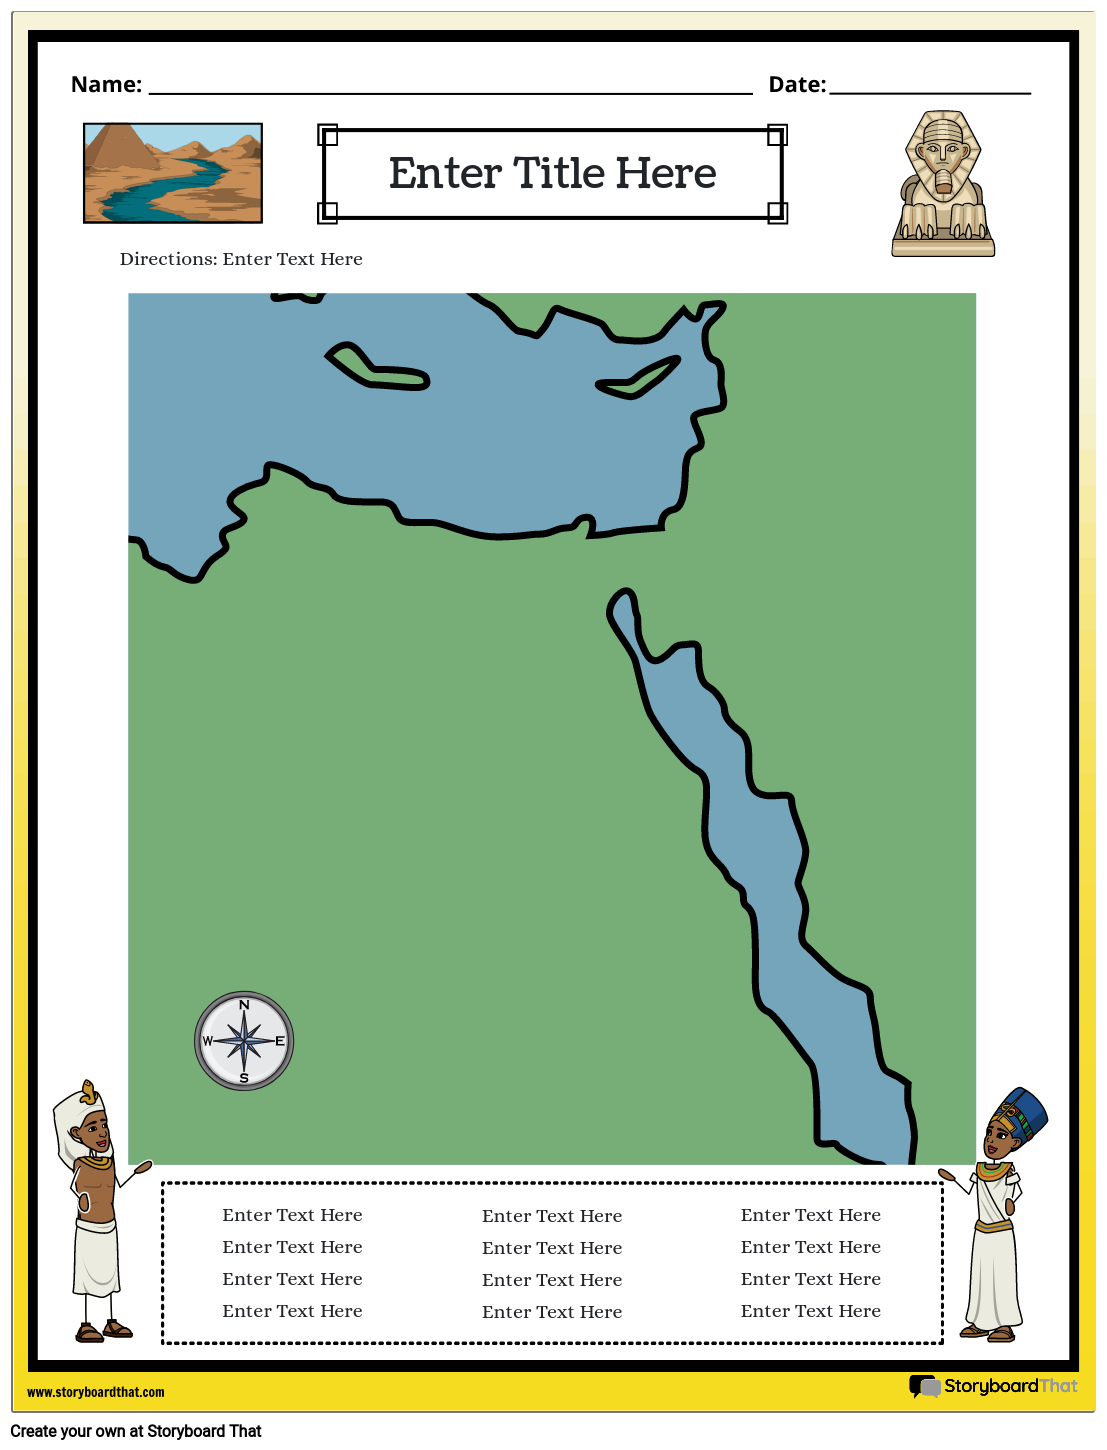 خريطة مصر القديمة